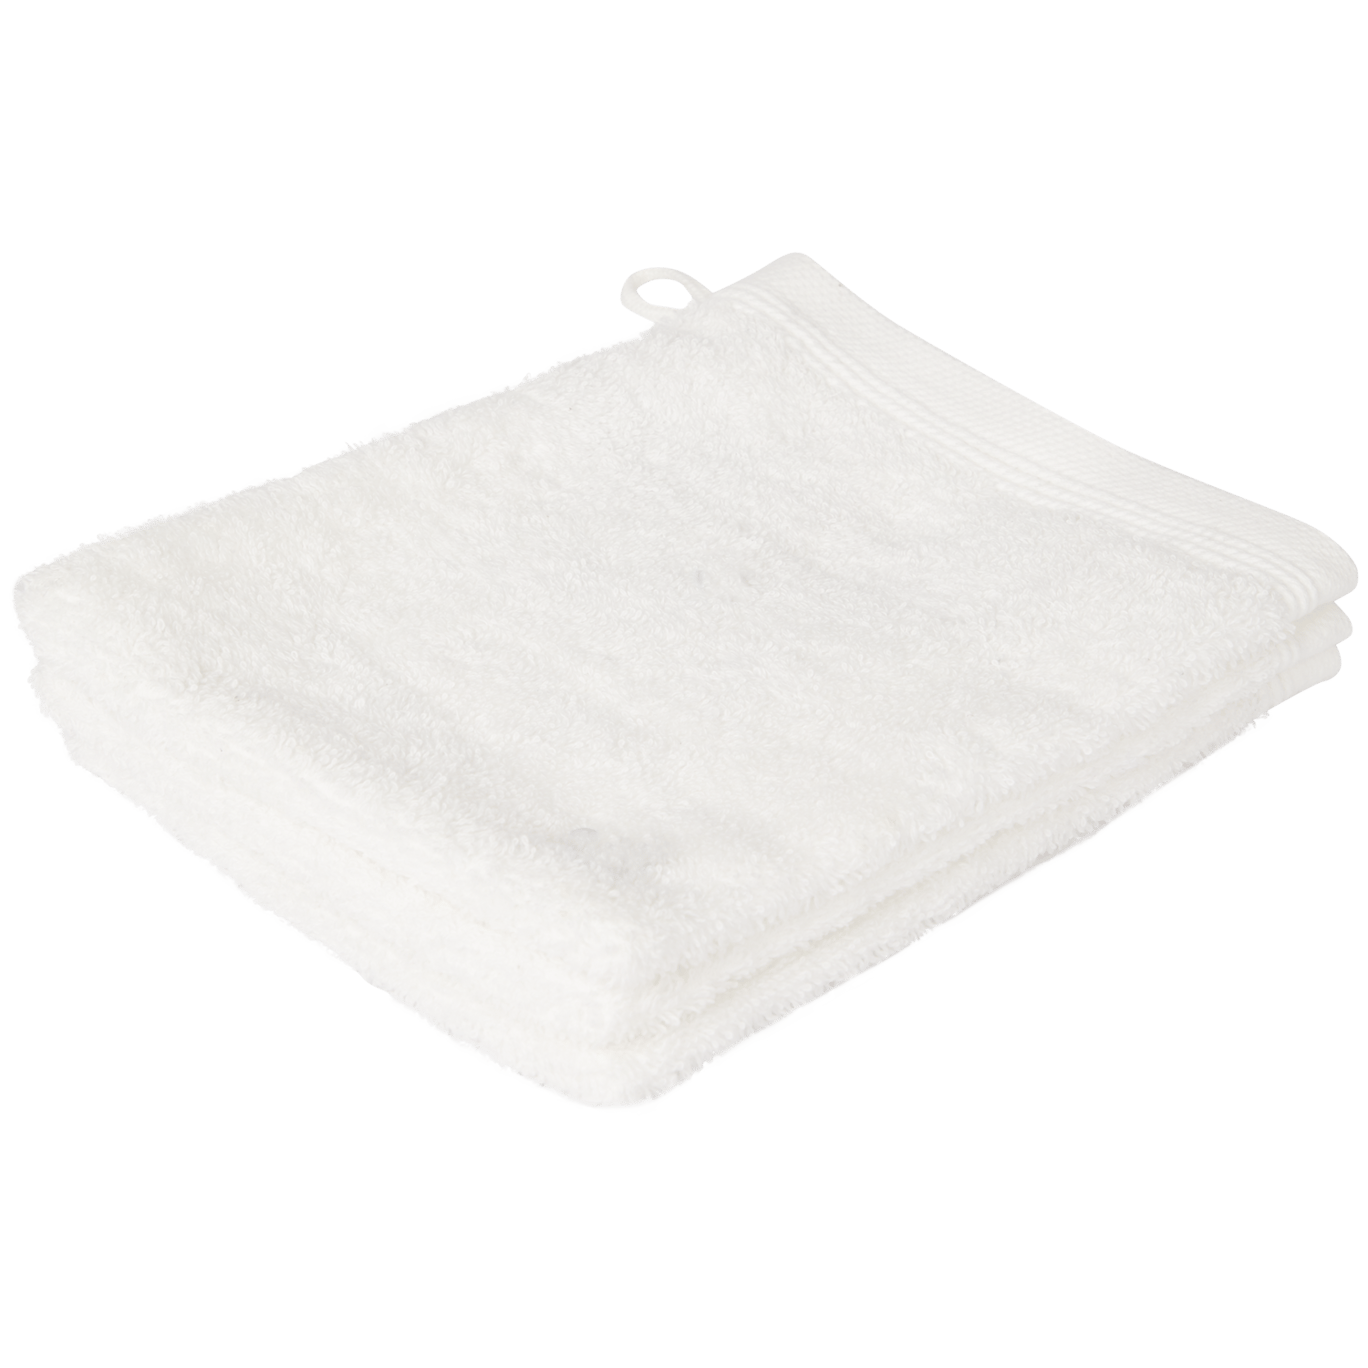 handdoeken en badlakens voor de laagste prijs Action.com